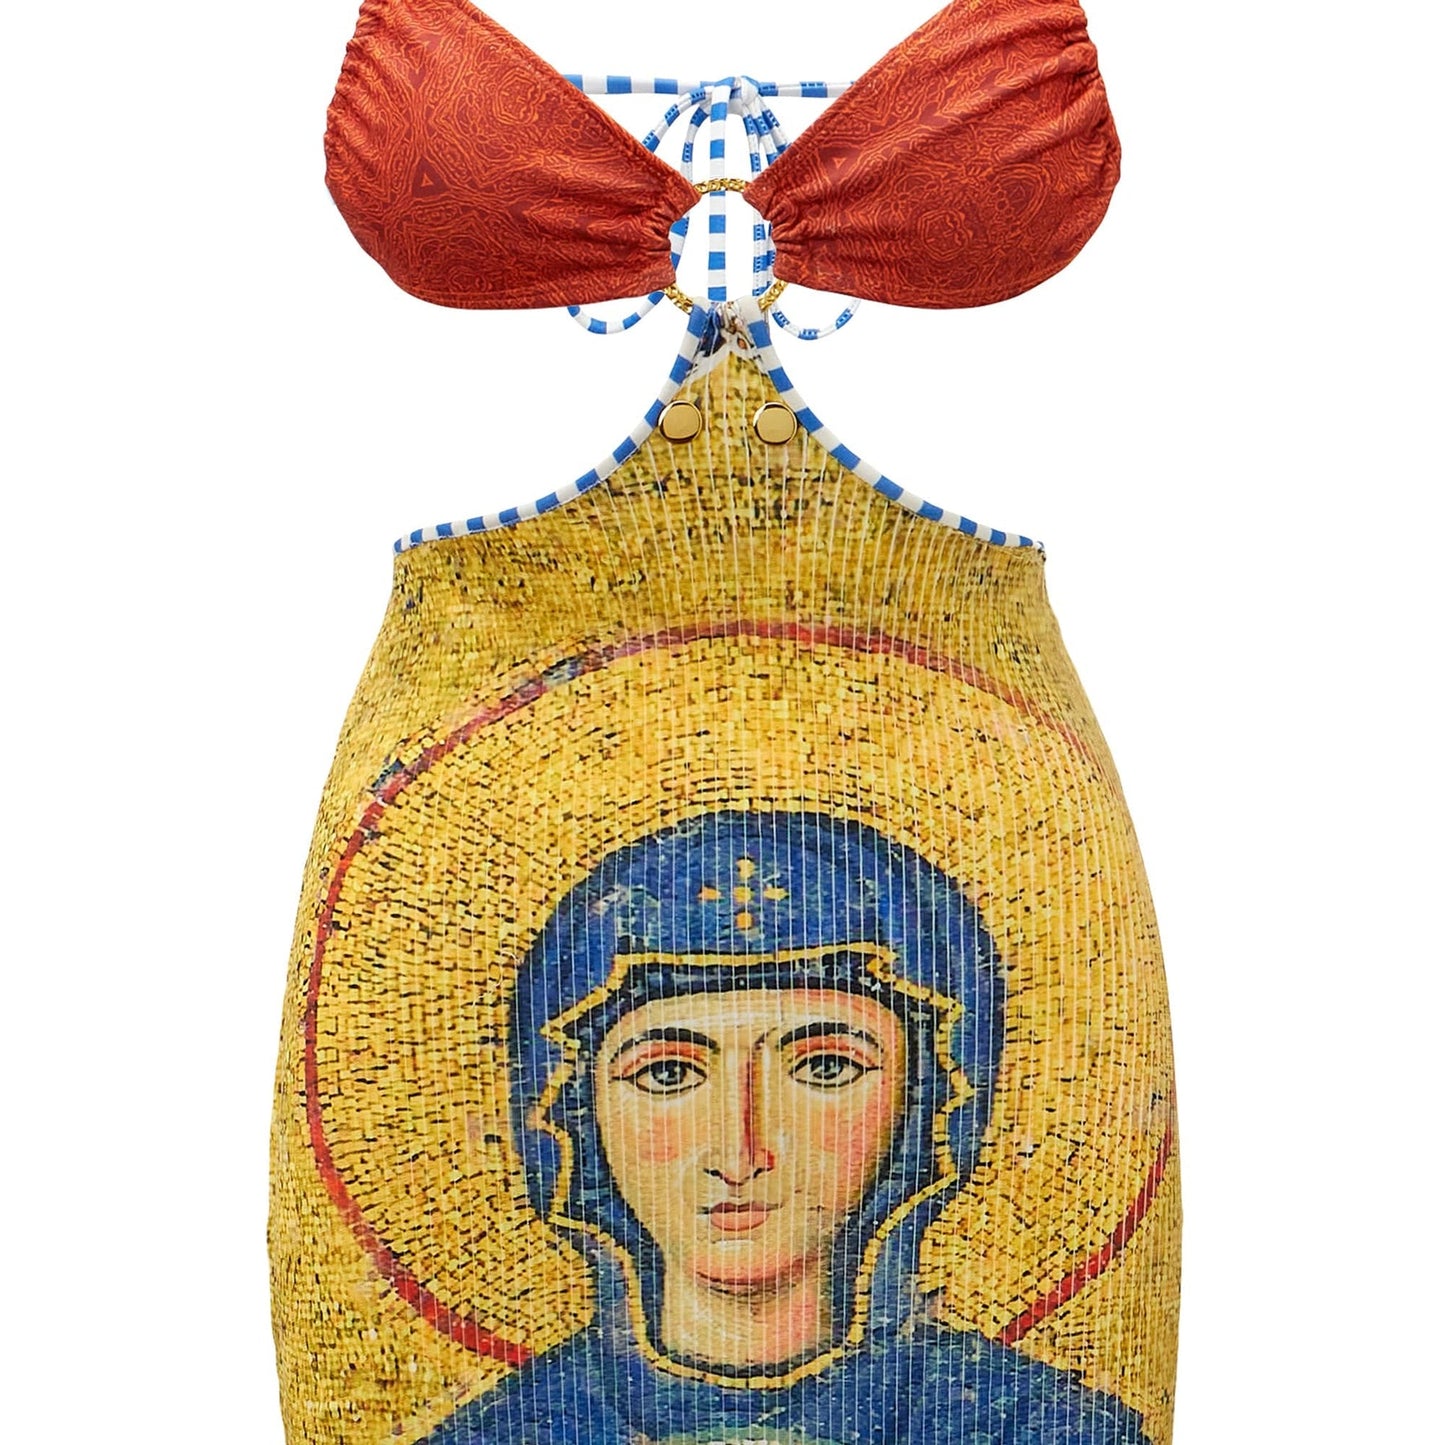 Akosha Rosario Dress (Mother Mary)